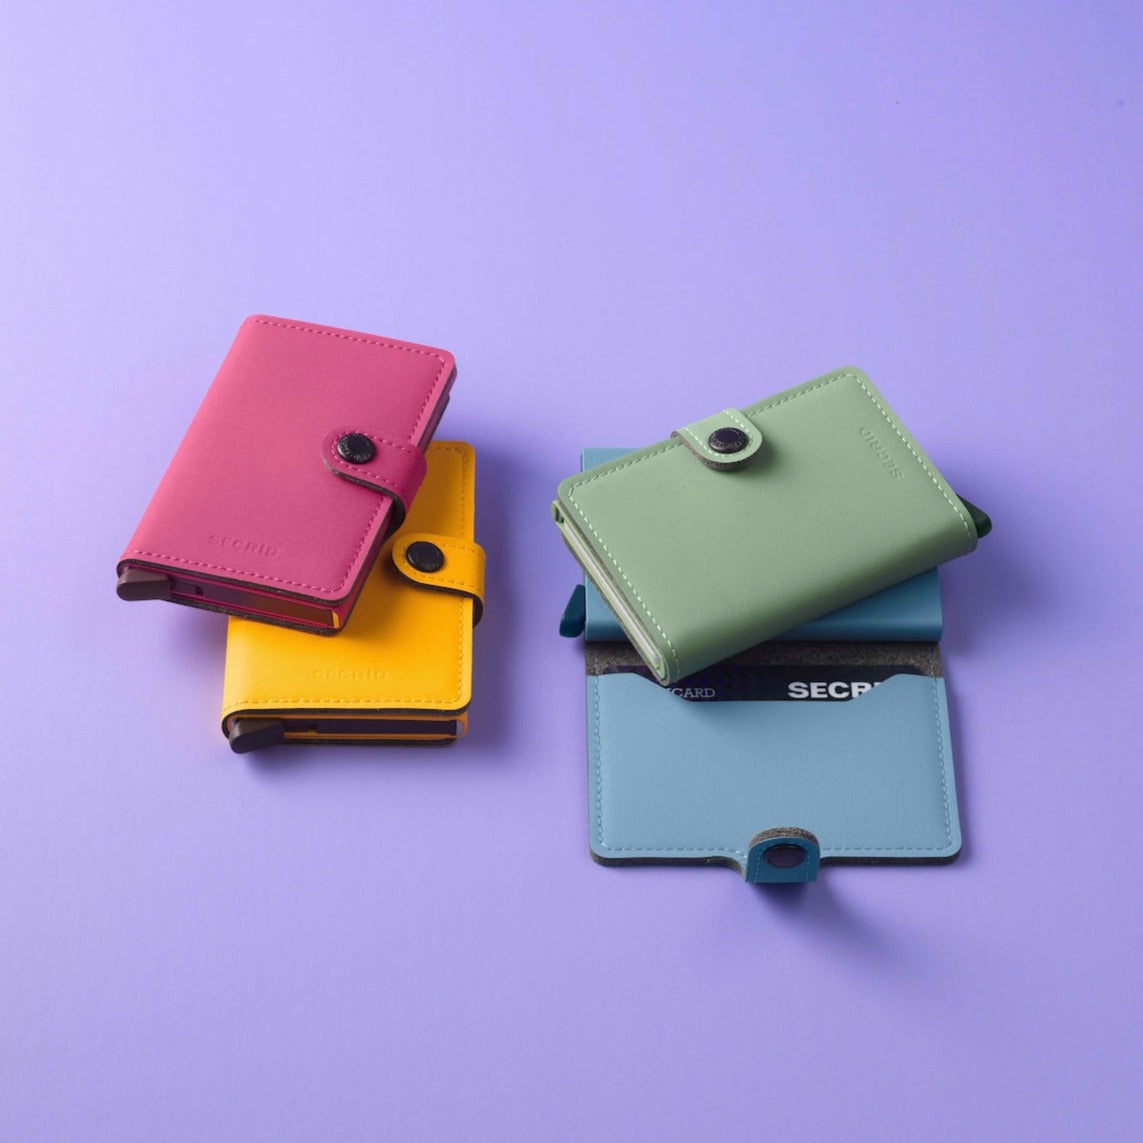 Luxusní peněženka z umělé kůže Miniwallet značky Secrid v barvě Style Yard Pistachio, pistáciová.